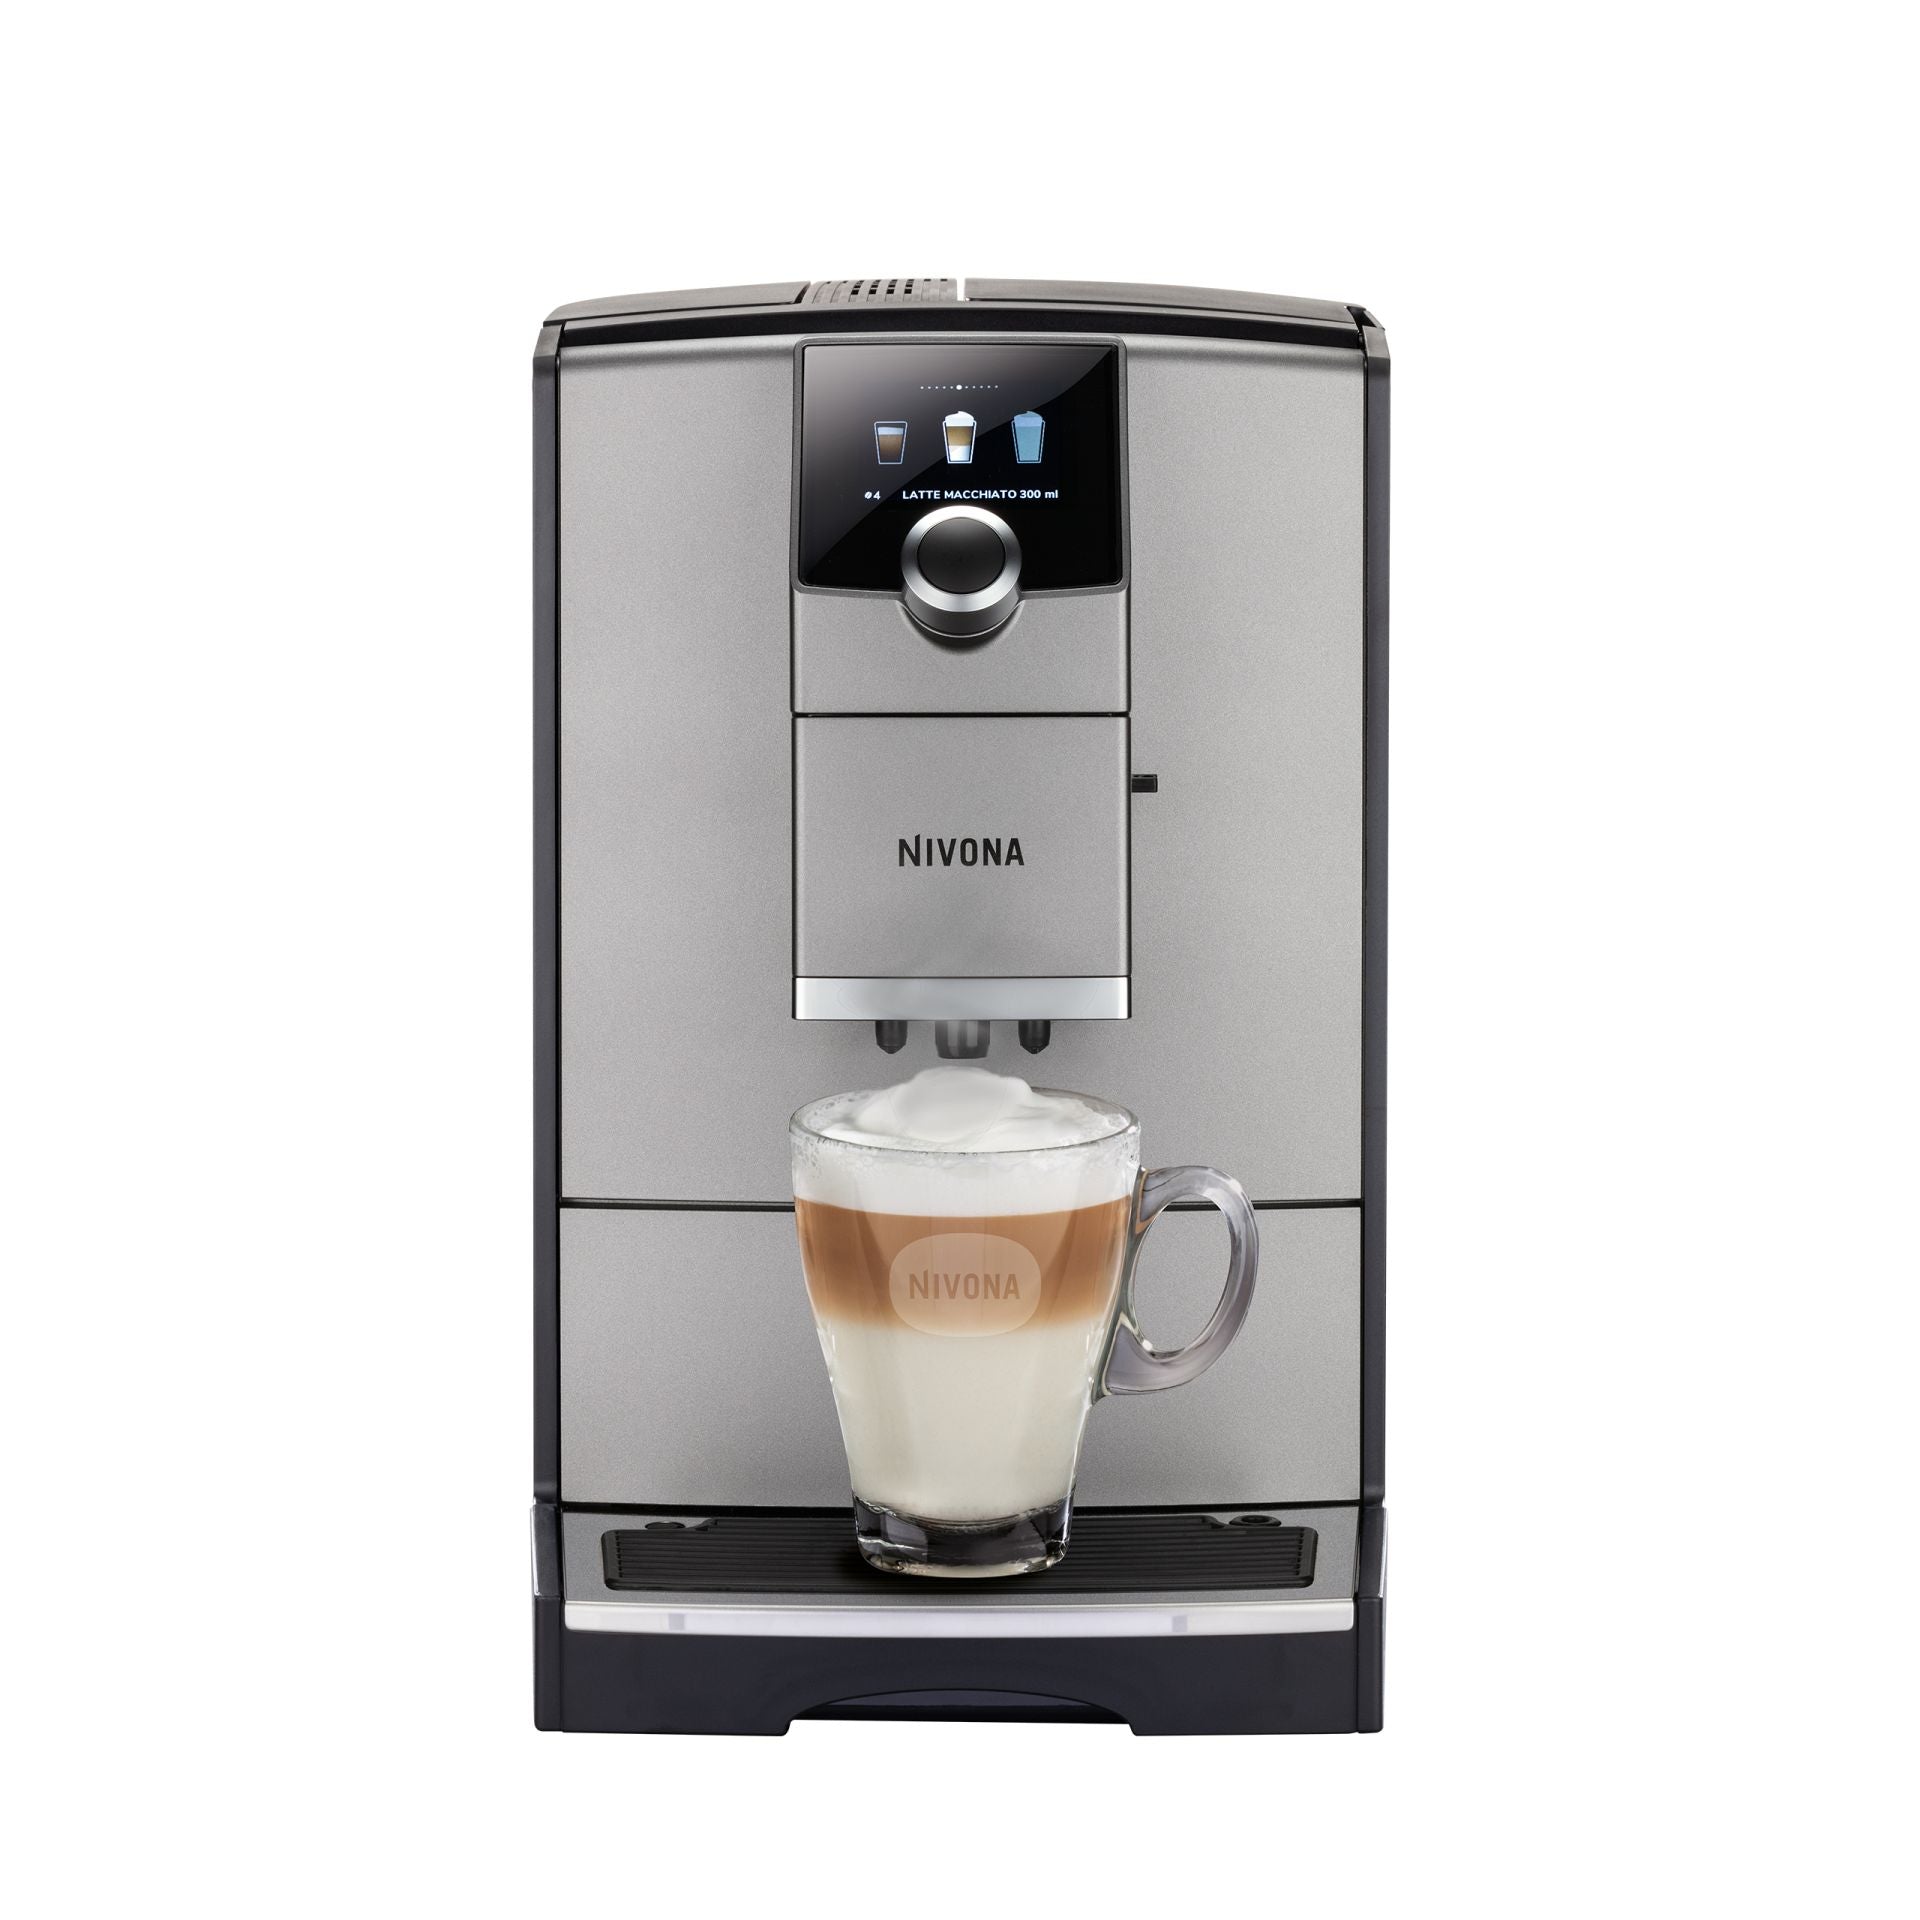 NICR 799 CafeRomatica полностью автоматическая эспрессо кофемашина